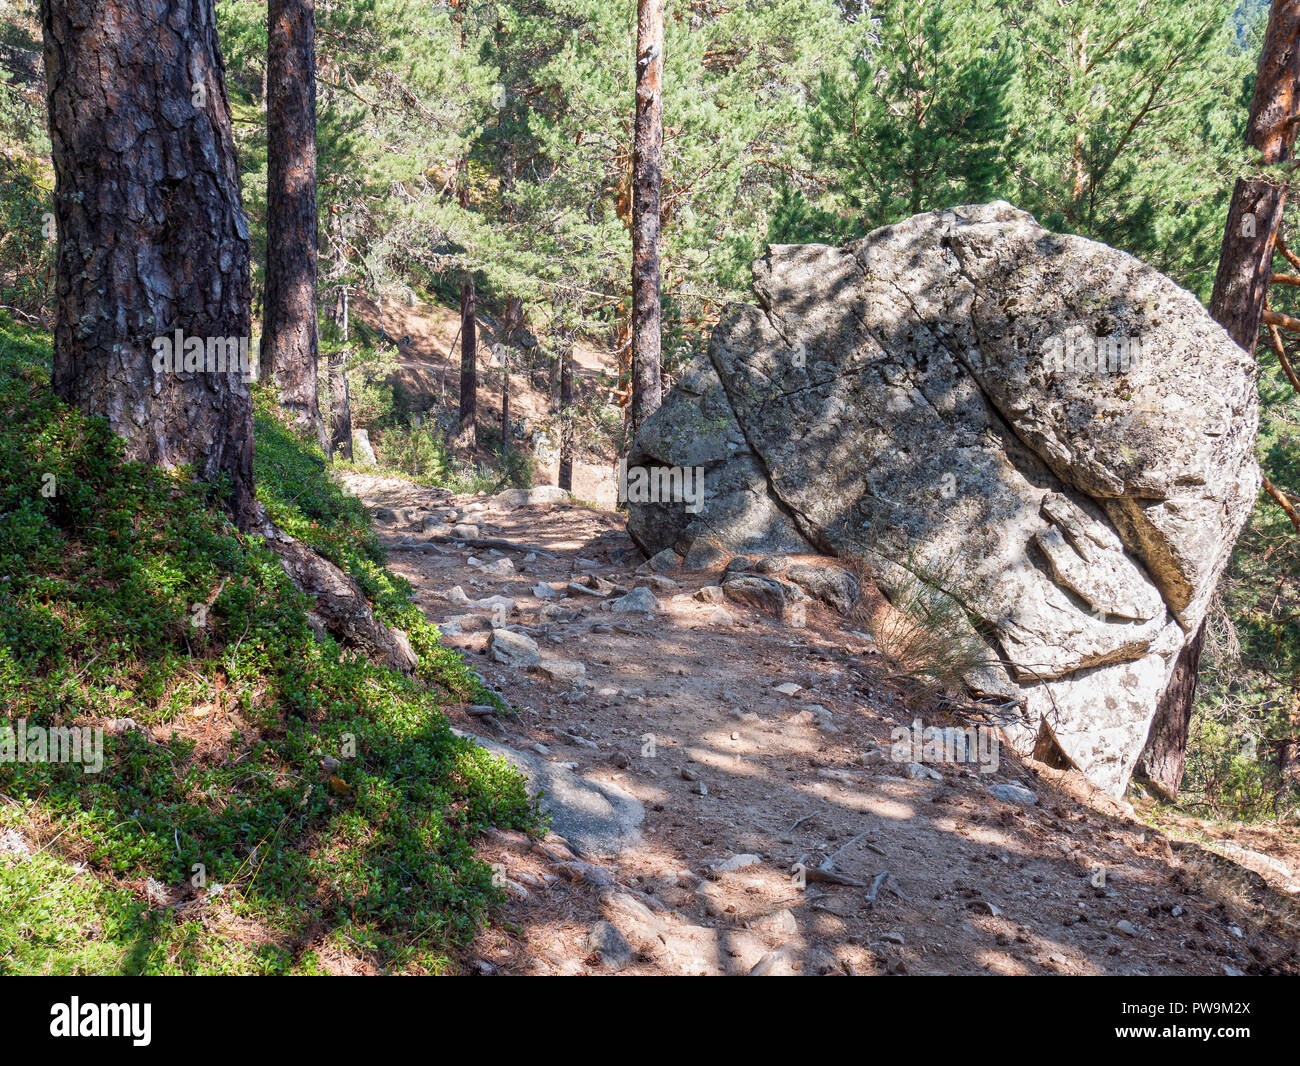 Sendero y roca de granito en el Valle de la Barranca en la Sierra de Guadarrama y dentro del 'Parque regional de la cuenca alta del Manzanares' (reser Stock Photo